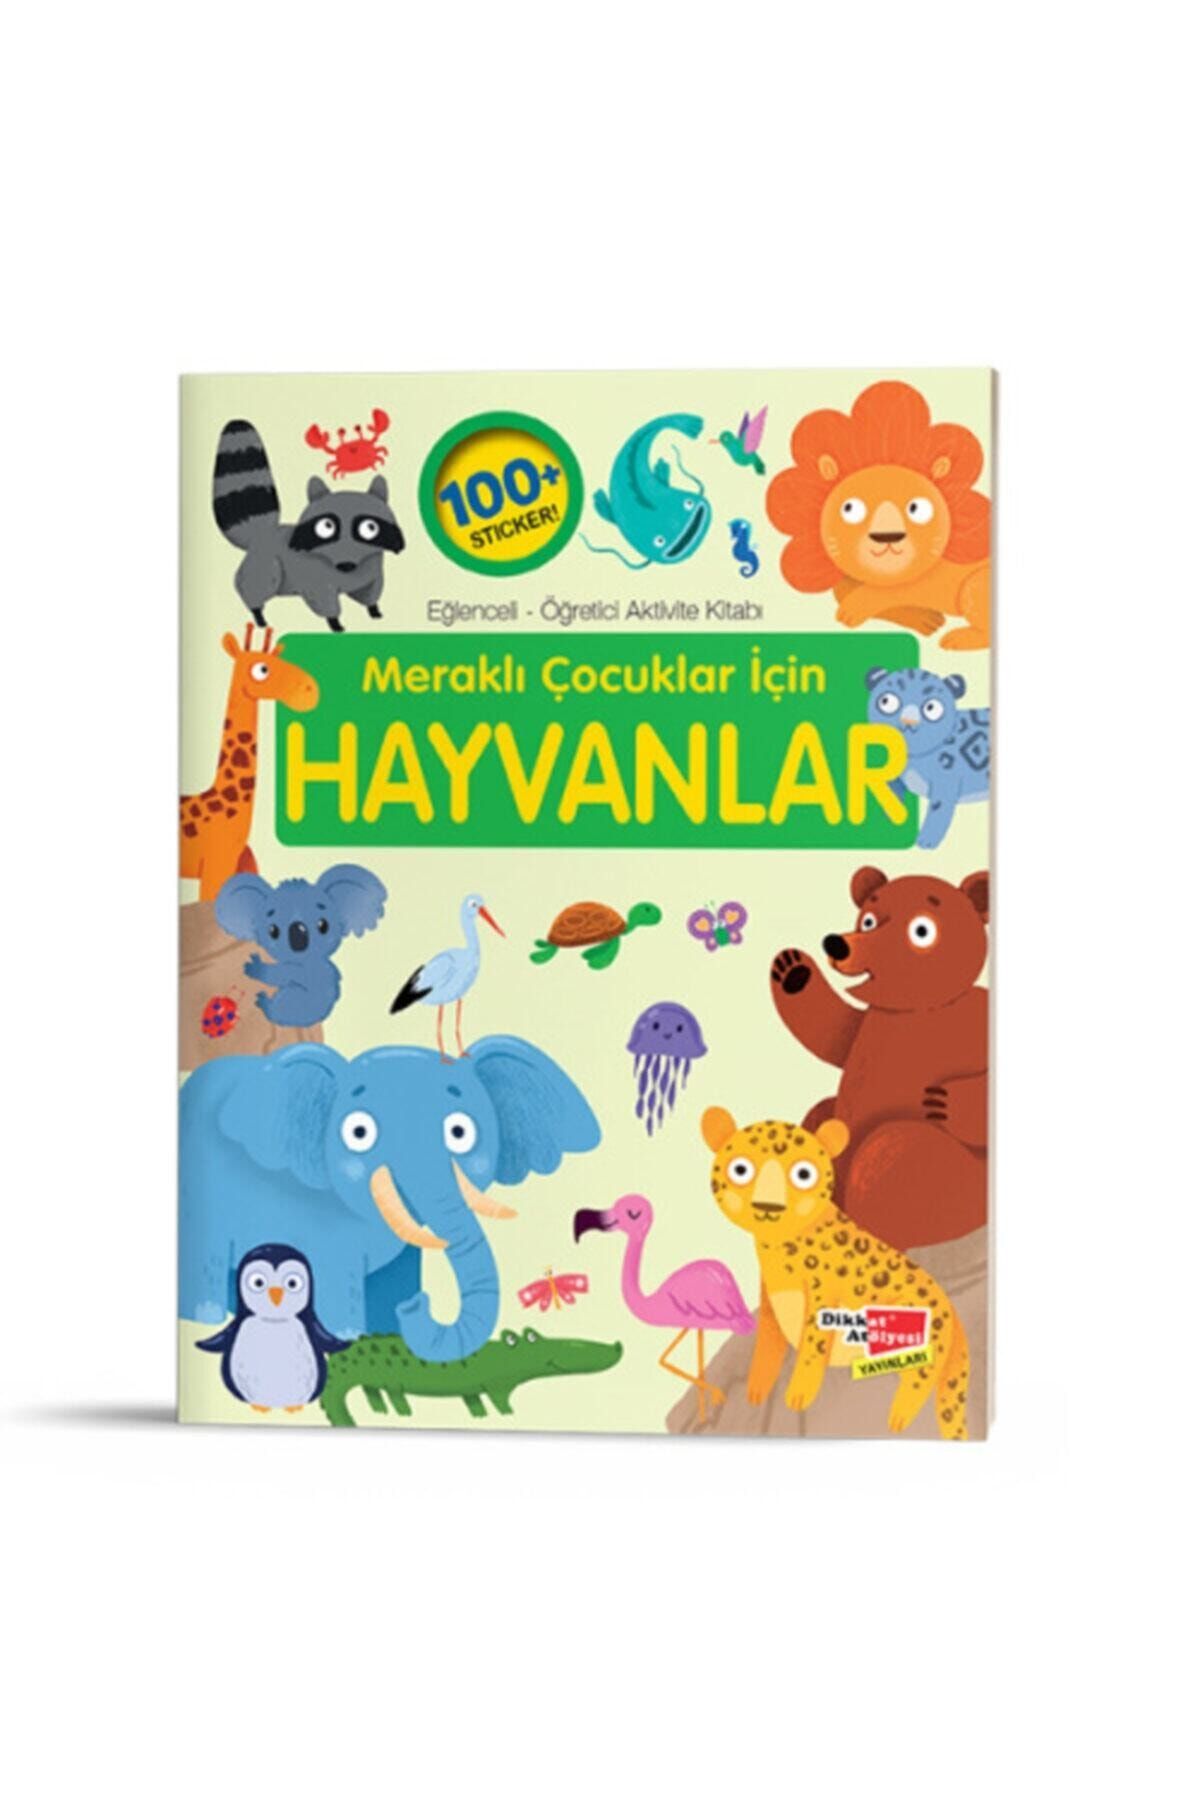 Dikkat Atölyesi Yayınları Meraklı Çocuklar Için Hayvanlar Eğlenceli-öğretici Aktivite Kitabı